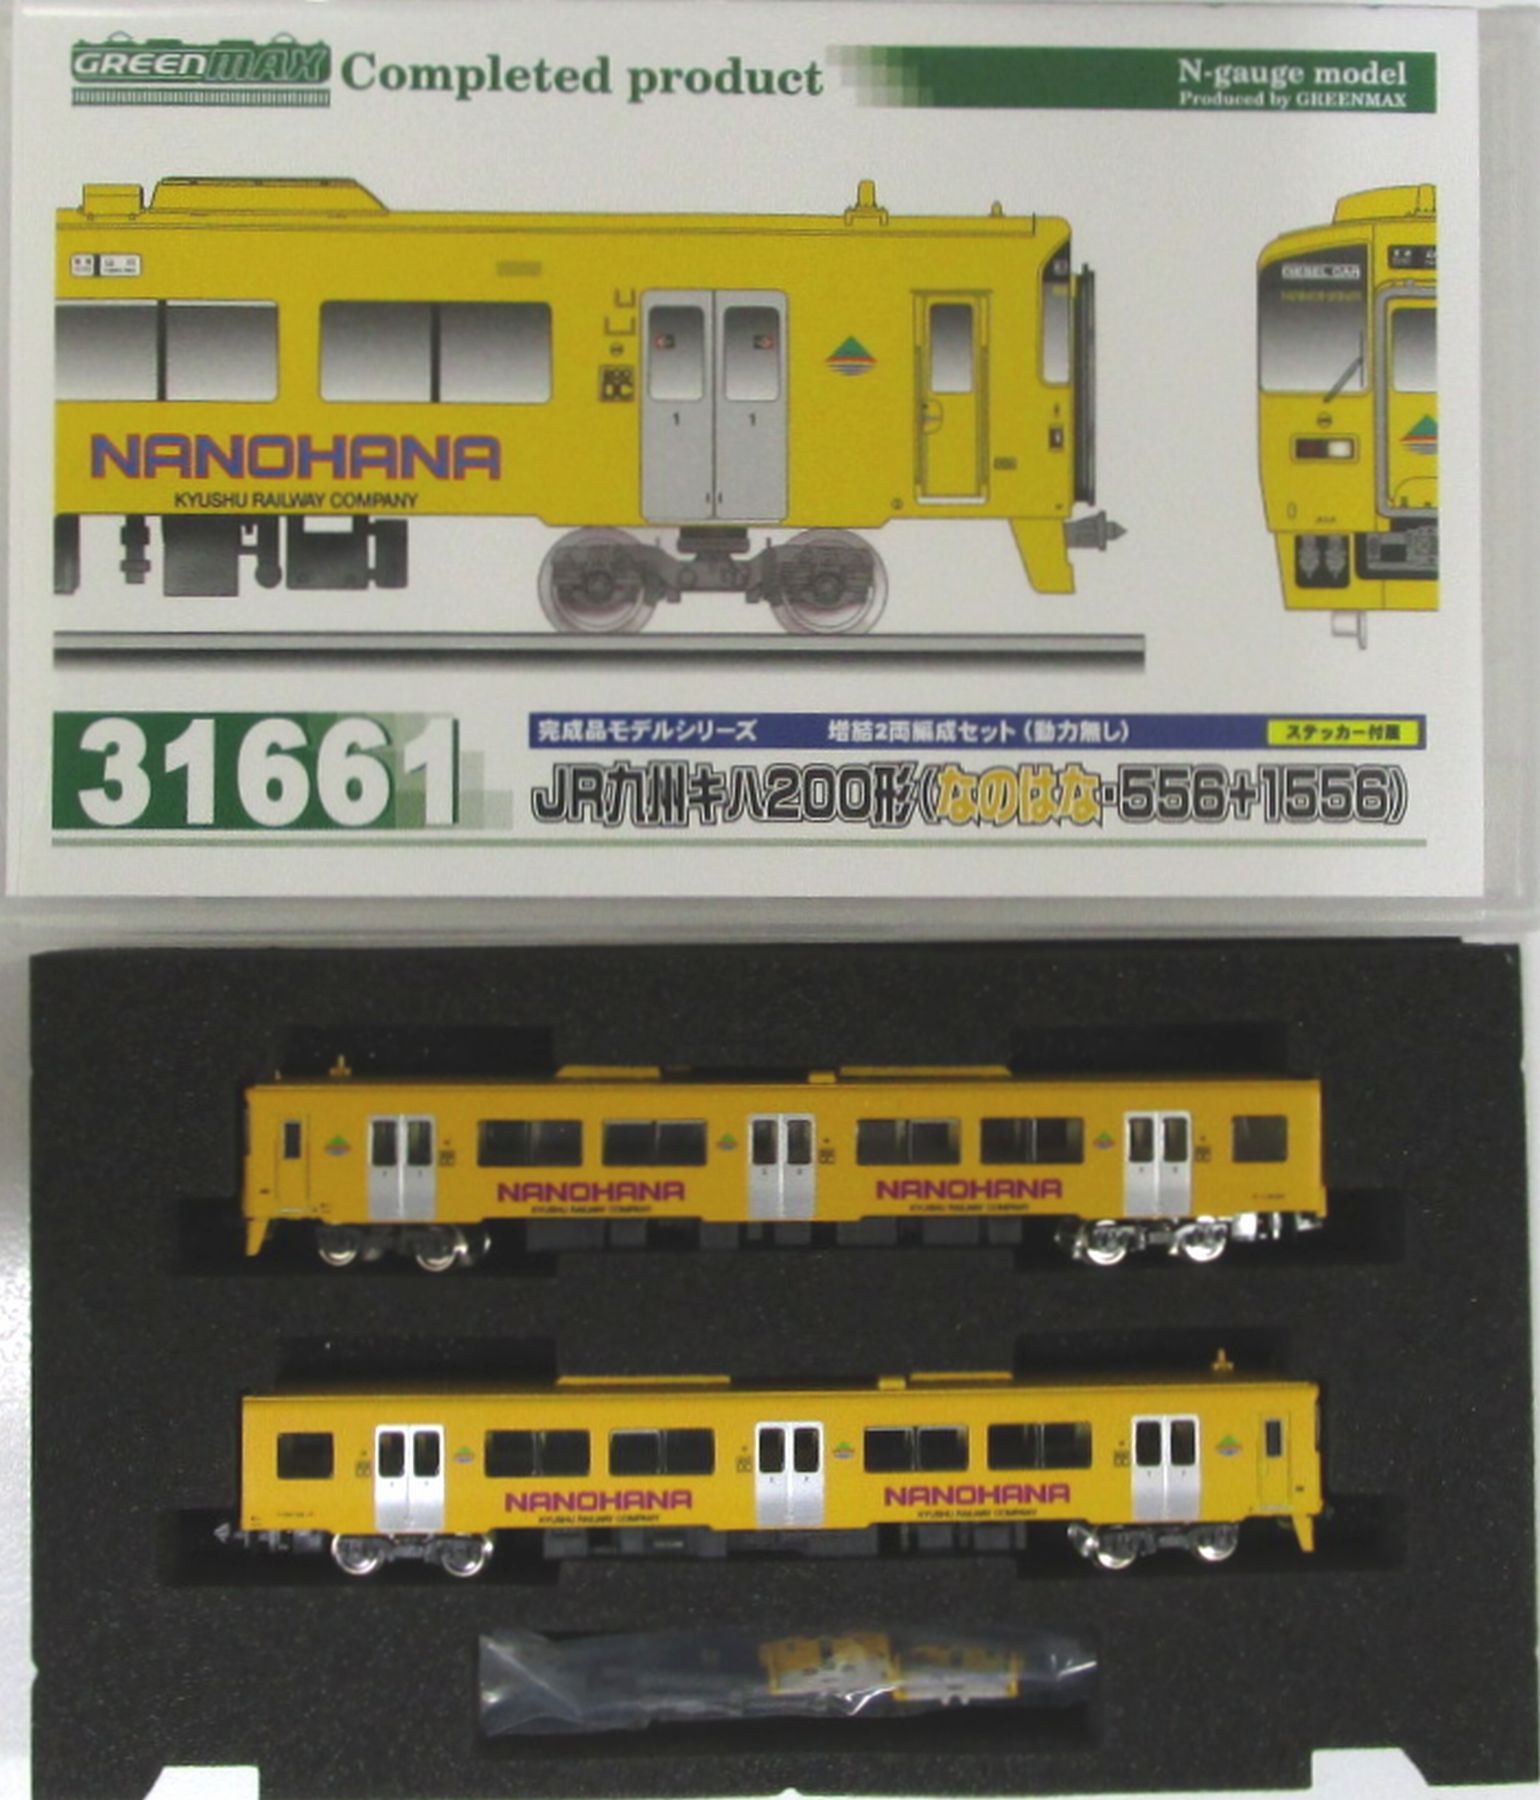 公式]鉄道模型(31661JR九州キハ200形(なのはな・556+1556) 増結2両編成